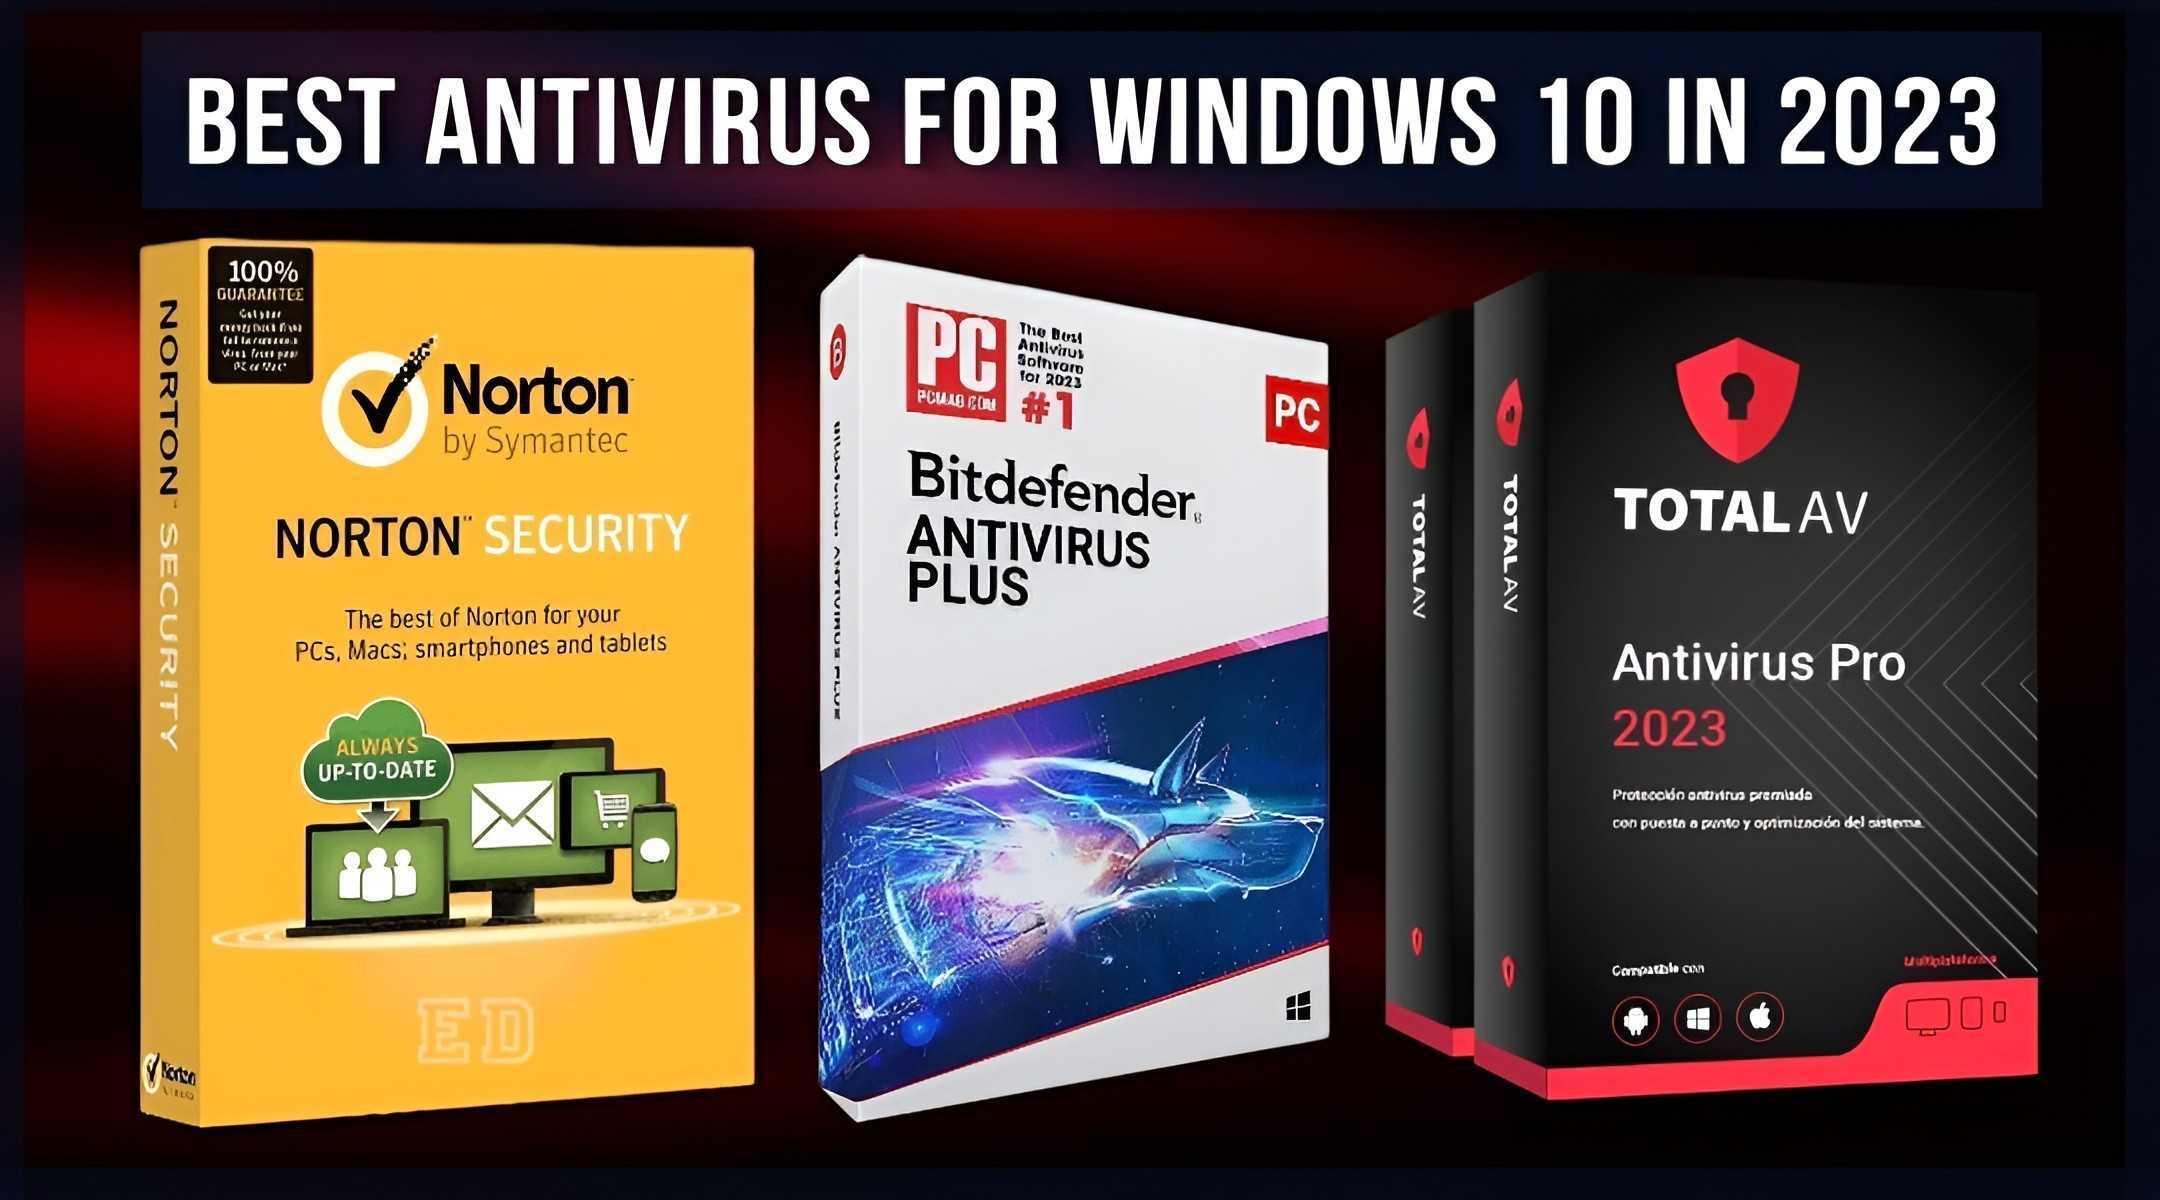 Best Antivirus for Windows 10 in 2023